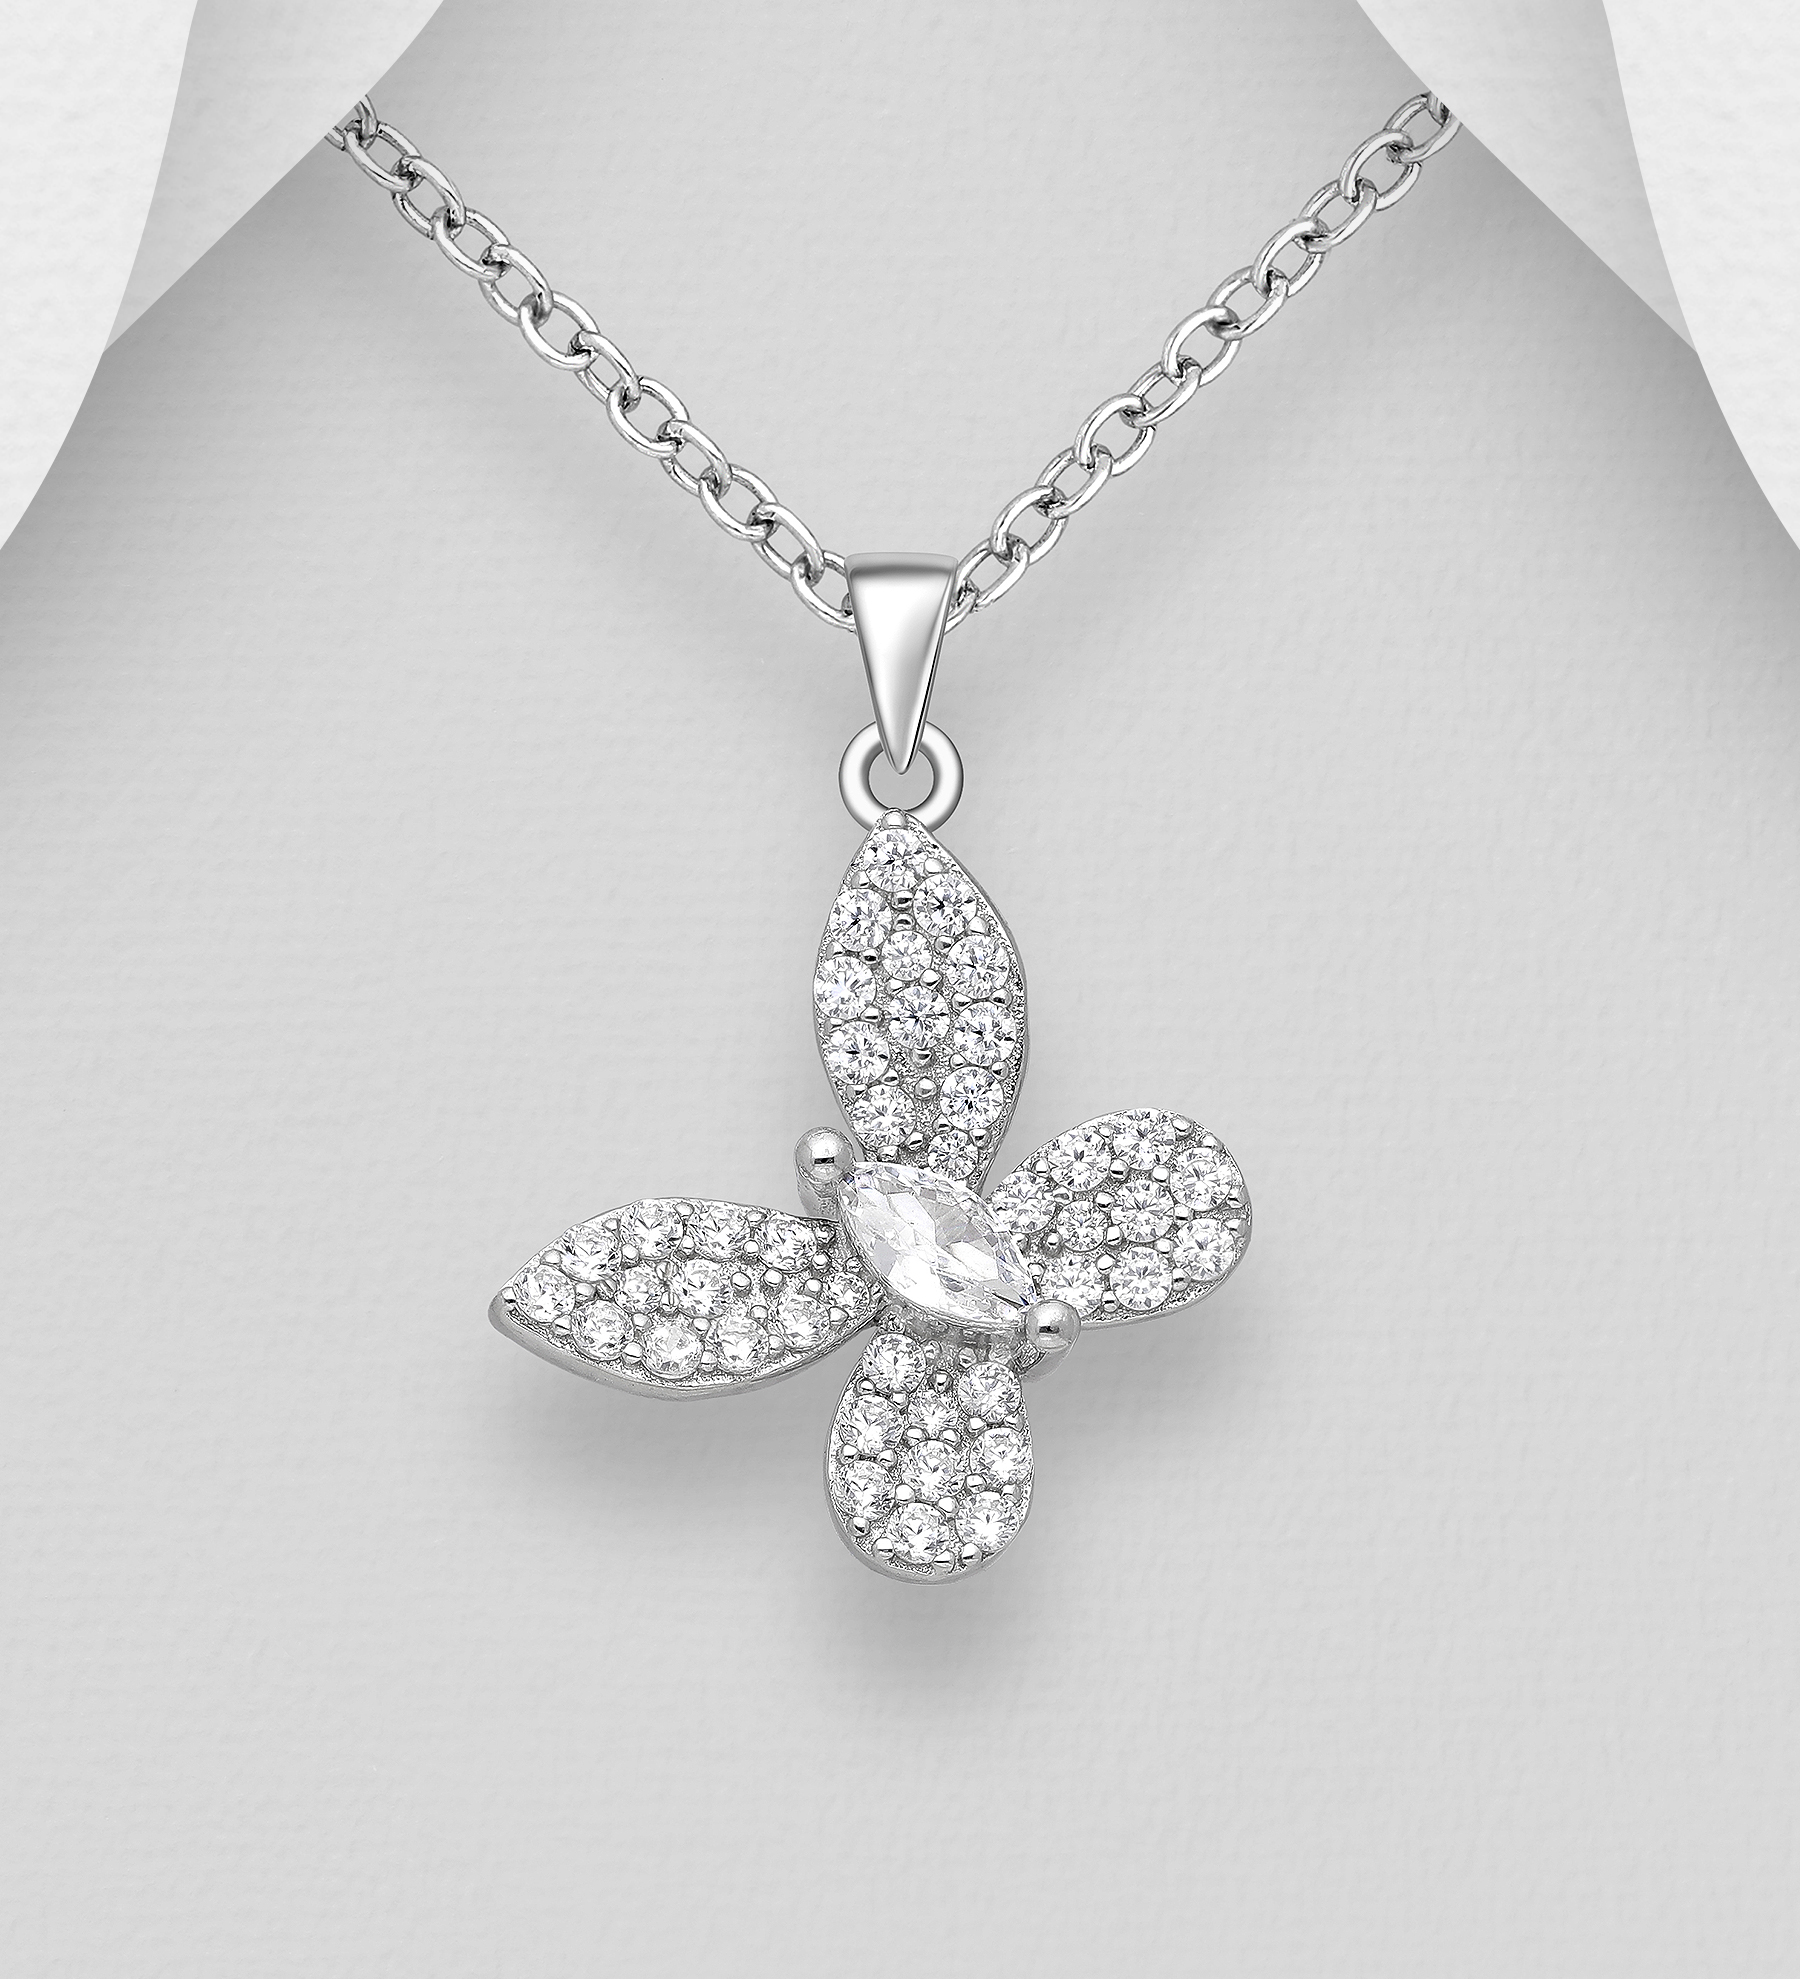 Silverhalsband hängande Fjäril av cubic zirkonia stenar - sött halsband till tjej/ dam i äkta 925 sterling silver